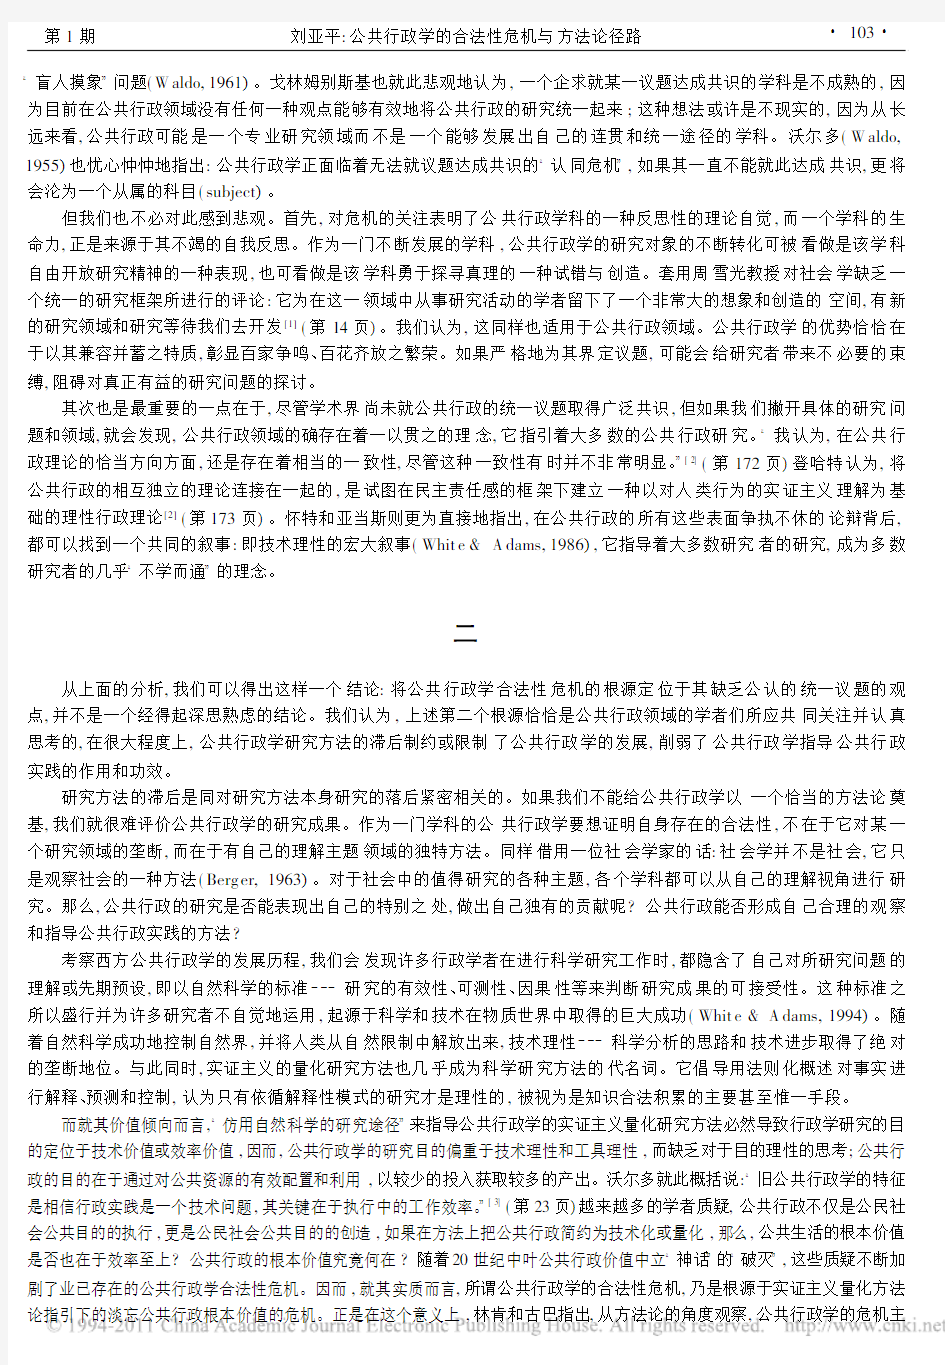 公共行政学的合法性危机与方法论径路_刘亚平